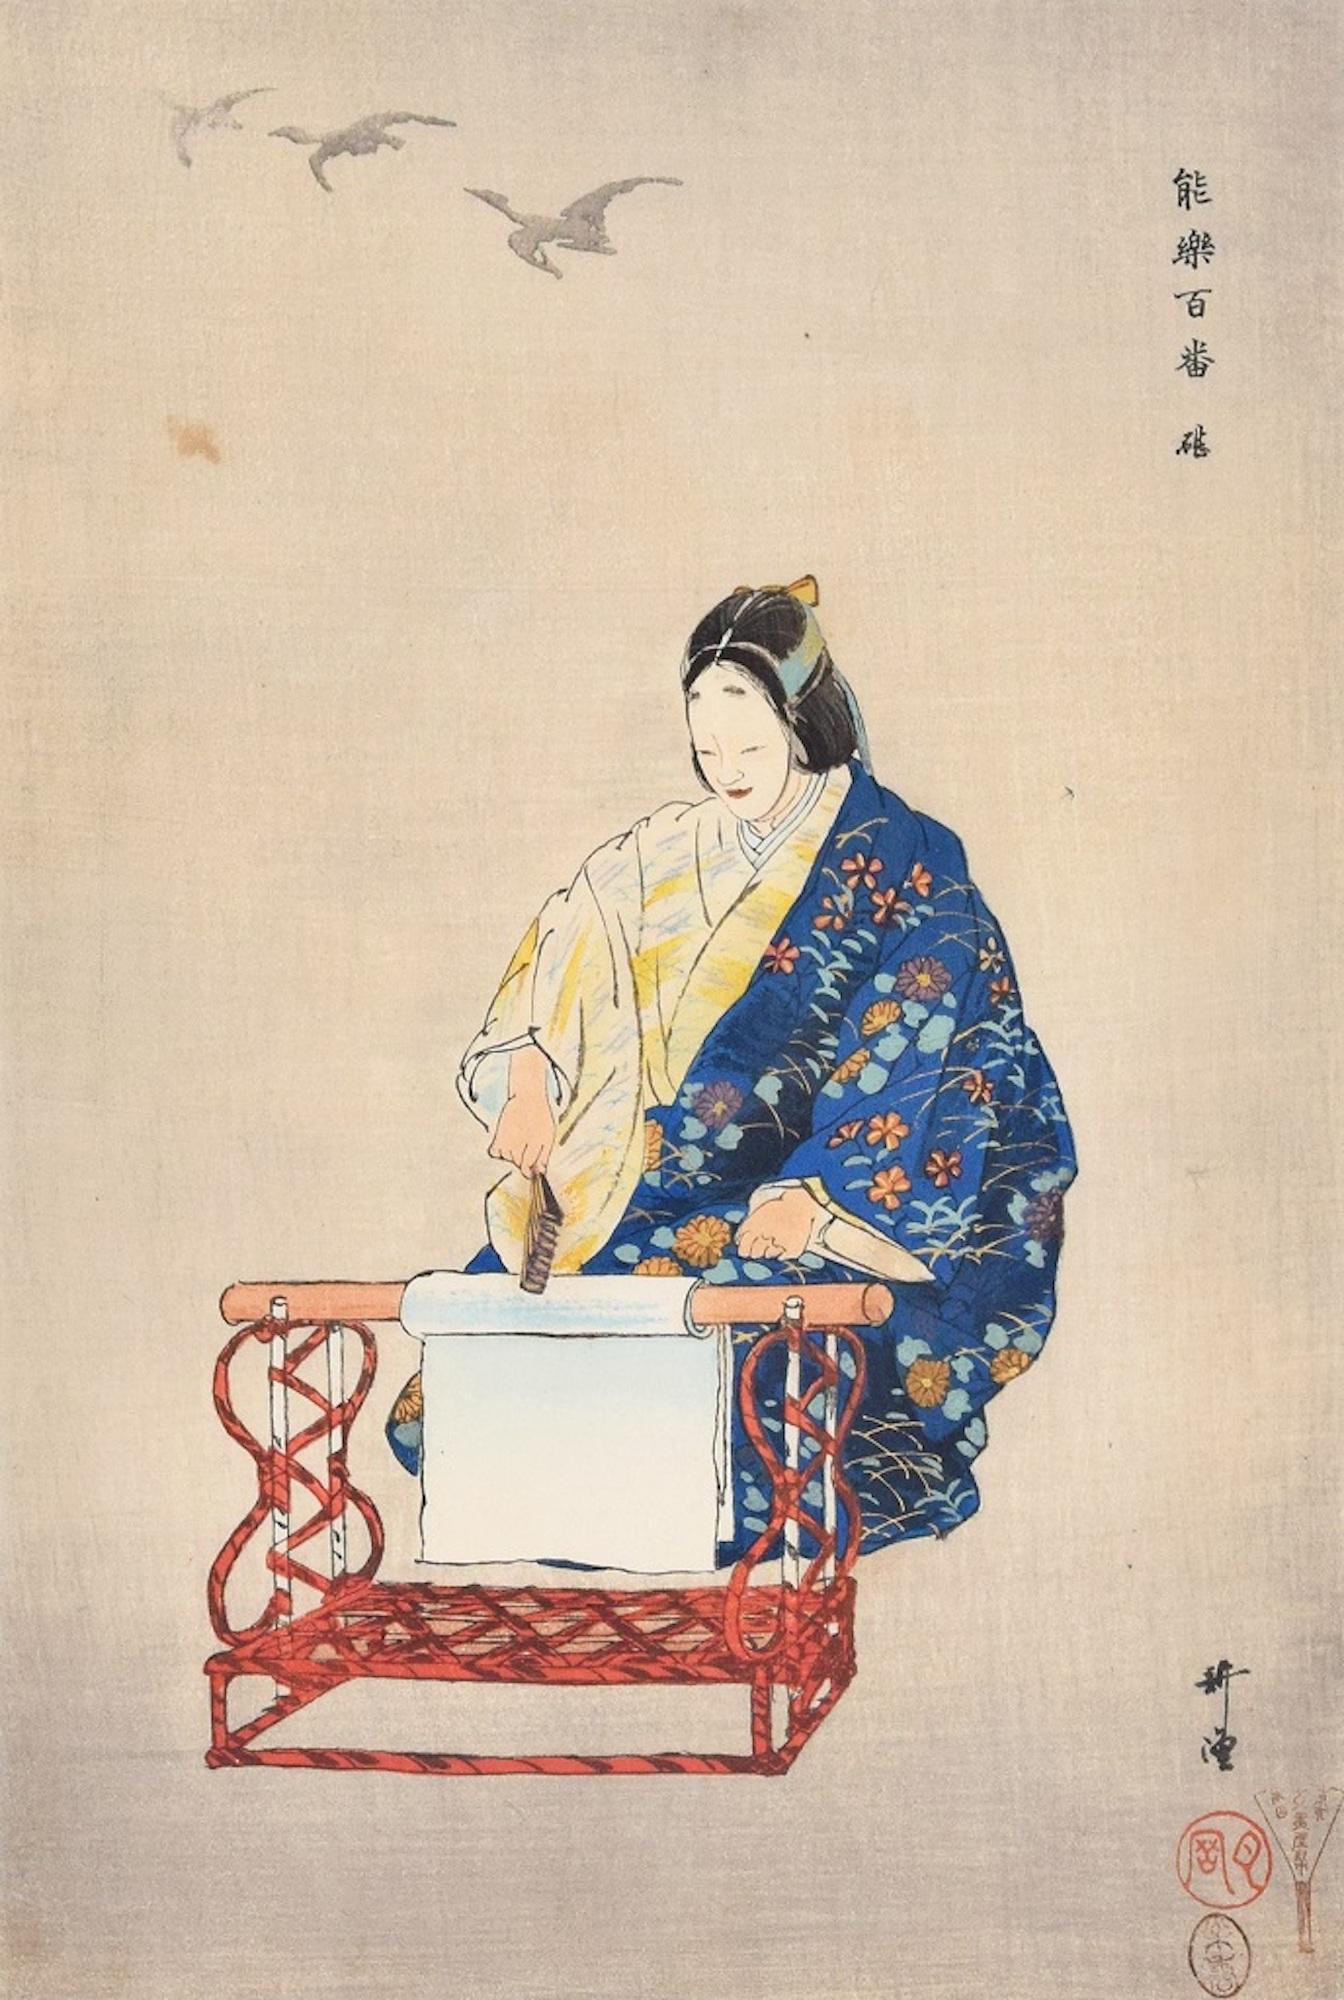 Kinuta est une magnifique xylographie en couleur sur papier, réalisée par le maître japonais Tsukiota Kogyo (1869-1927).

La signature de l'artiste se trouve dans le sceau rouge imprimé dans le coin inférieur droit "Tsukioka".
Tiré de la série "Cent